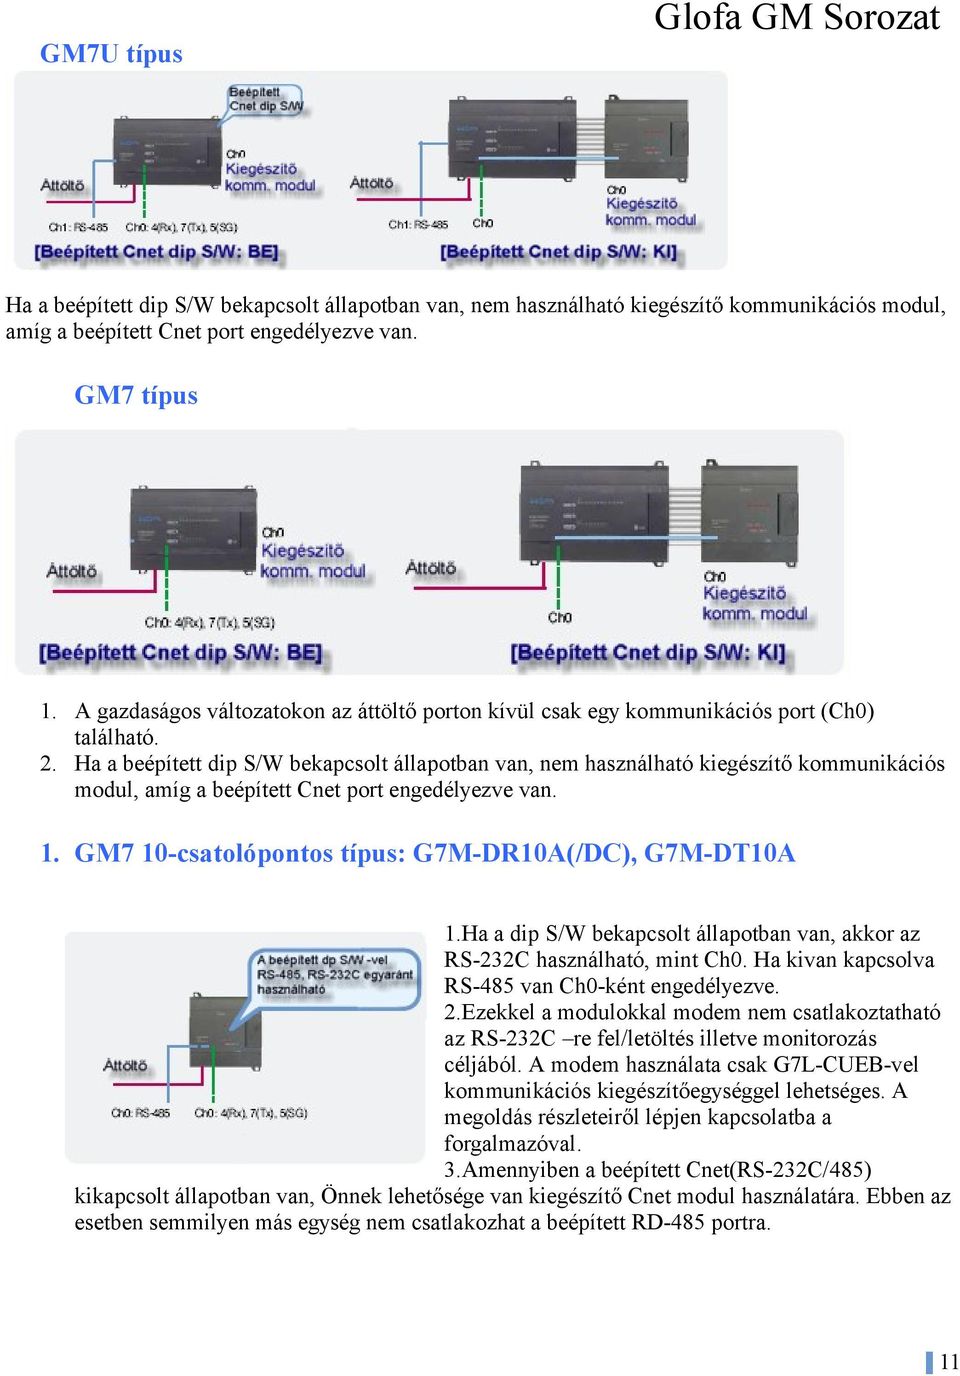 Ha a beépített dip S/W bekapcslt állaptban van, nem használható kiegészítő kmmunikációs mdul, amíg a beépített Cnet prt engedélyezve van. 1. GM7 10-csatlópnts típus: G7M-DR10A(/DC), G7M-DT10A 1.